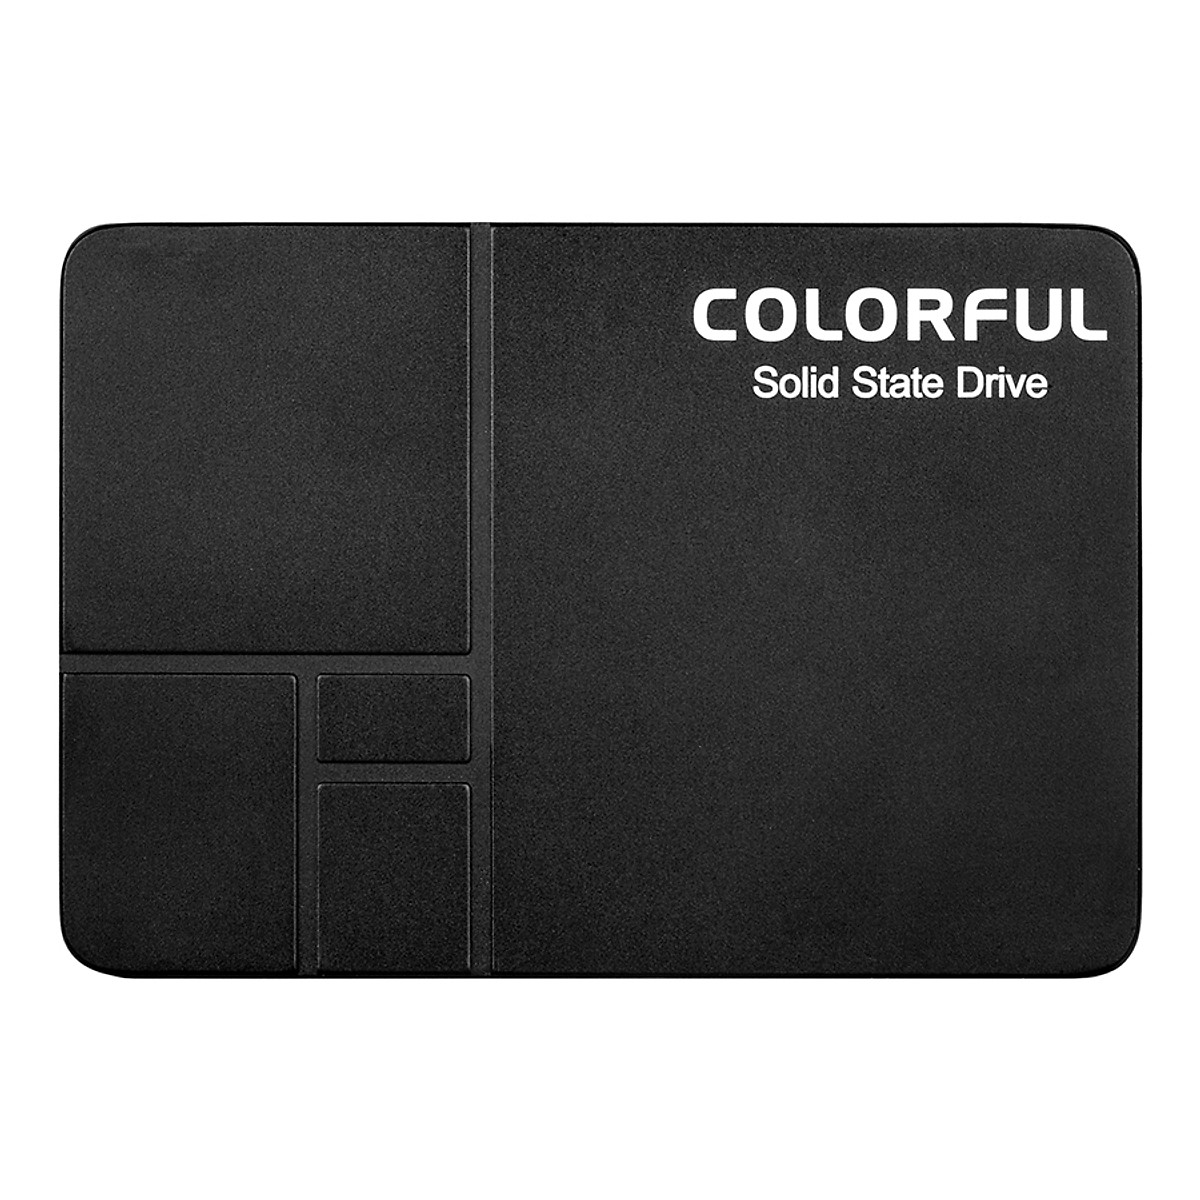 Ổ cứng gắng trong, ổ cứng SSD Colorful SL300120GB SATA III tốc độ 6Gb/s chuẩn 2.5 inch - Hàng chính hãng